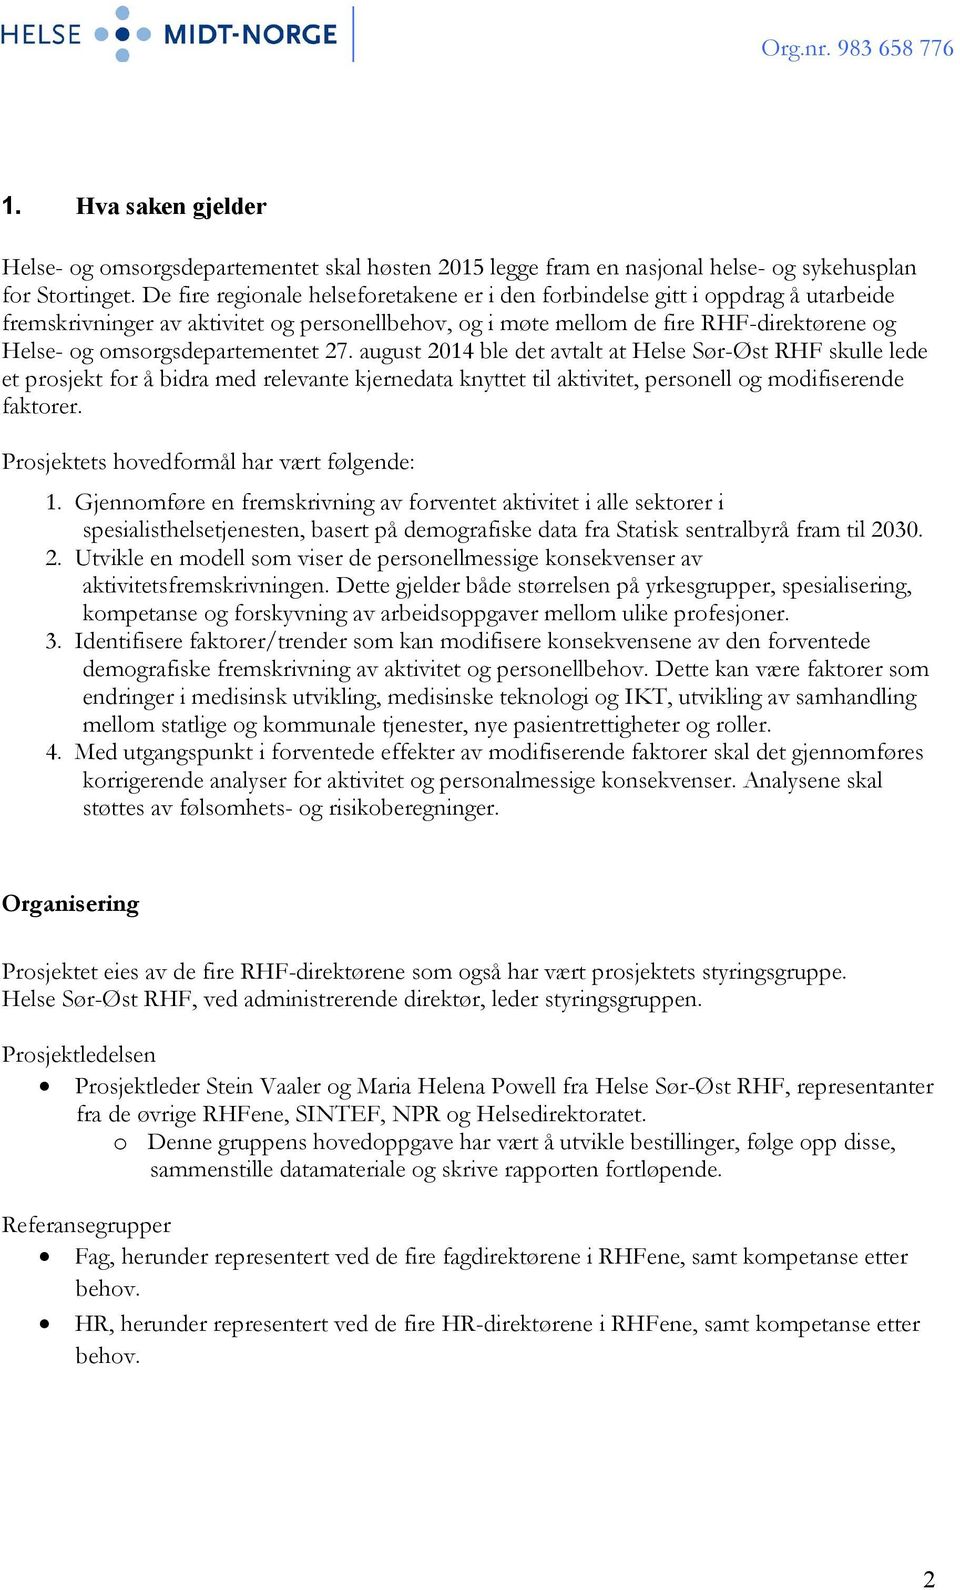 omsorgsdepartementet 27. august 2014 ble det avtalt at Helse Sør-Øst RHF skulle lede et prosjekt for å bidra med relevante kjernedata knyttet til aktivitet, personell og modifiserende faktorer.